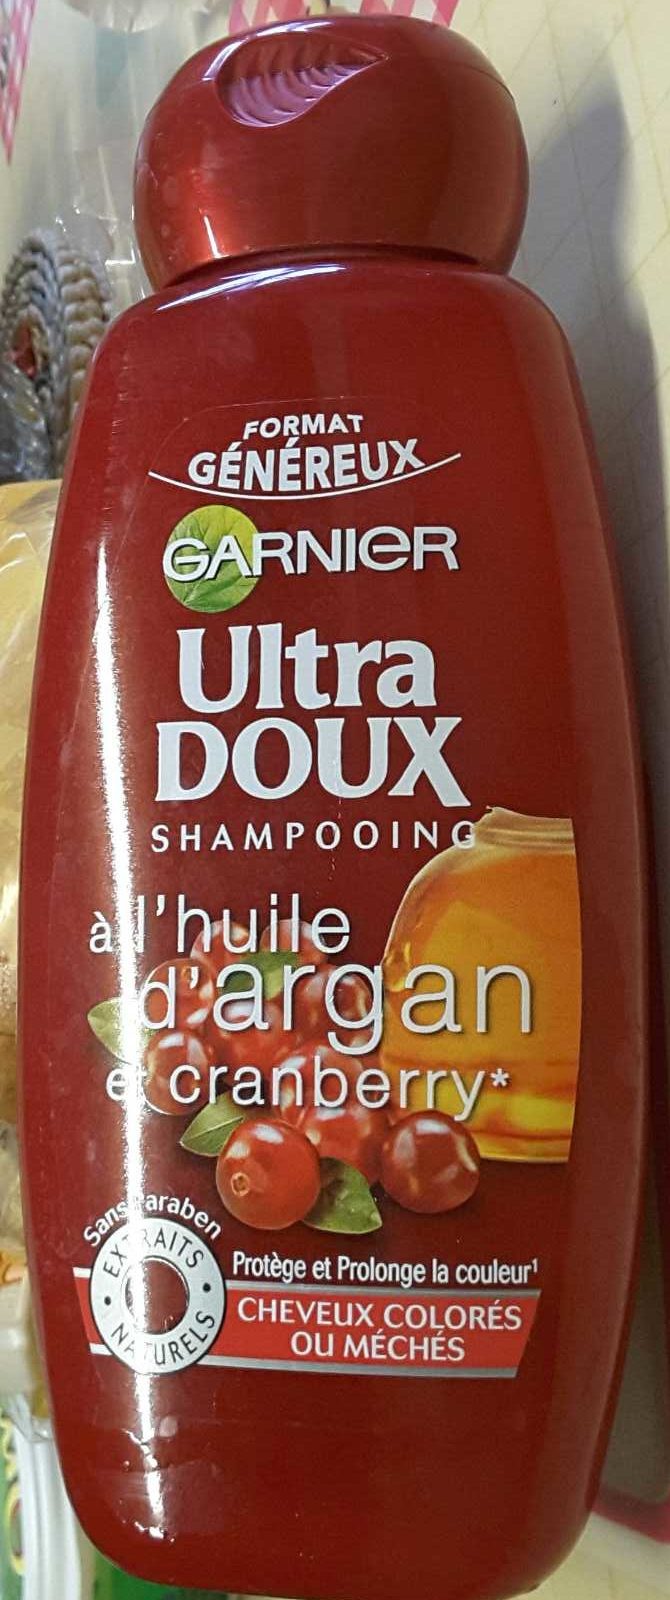 Ultra Doux Shampooing à l'huile d'argan et cranberry (format généreux) - Tuote - fr